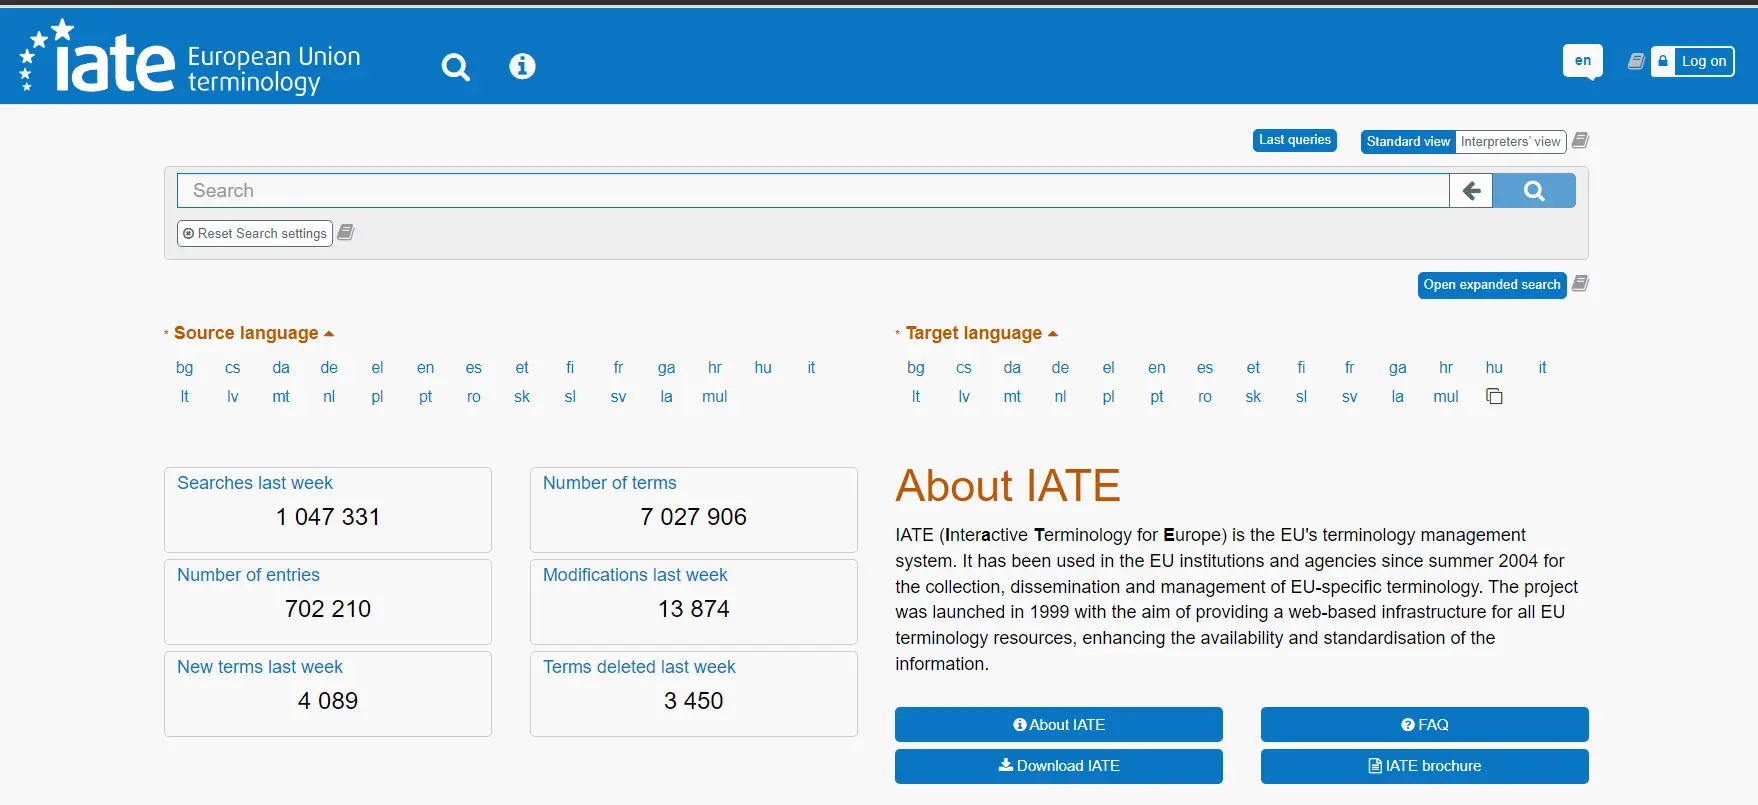 IATE (Terminología Interactiva para Europa) Base de Datos Terminológica de la Unión Europea